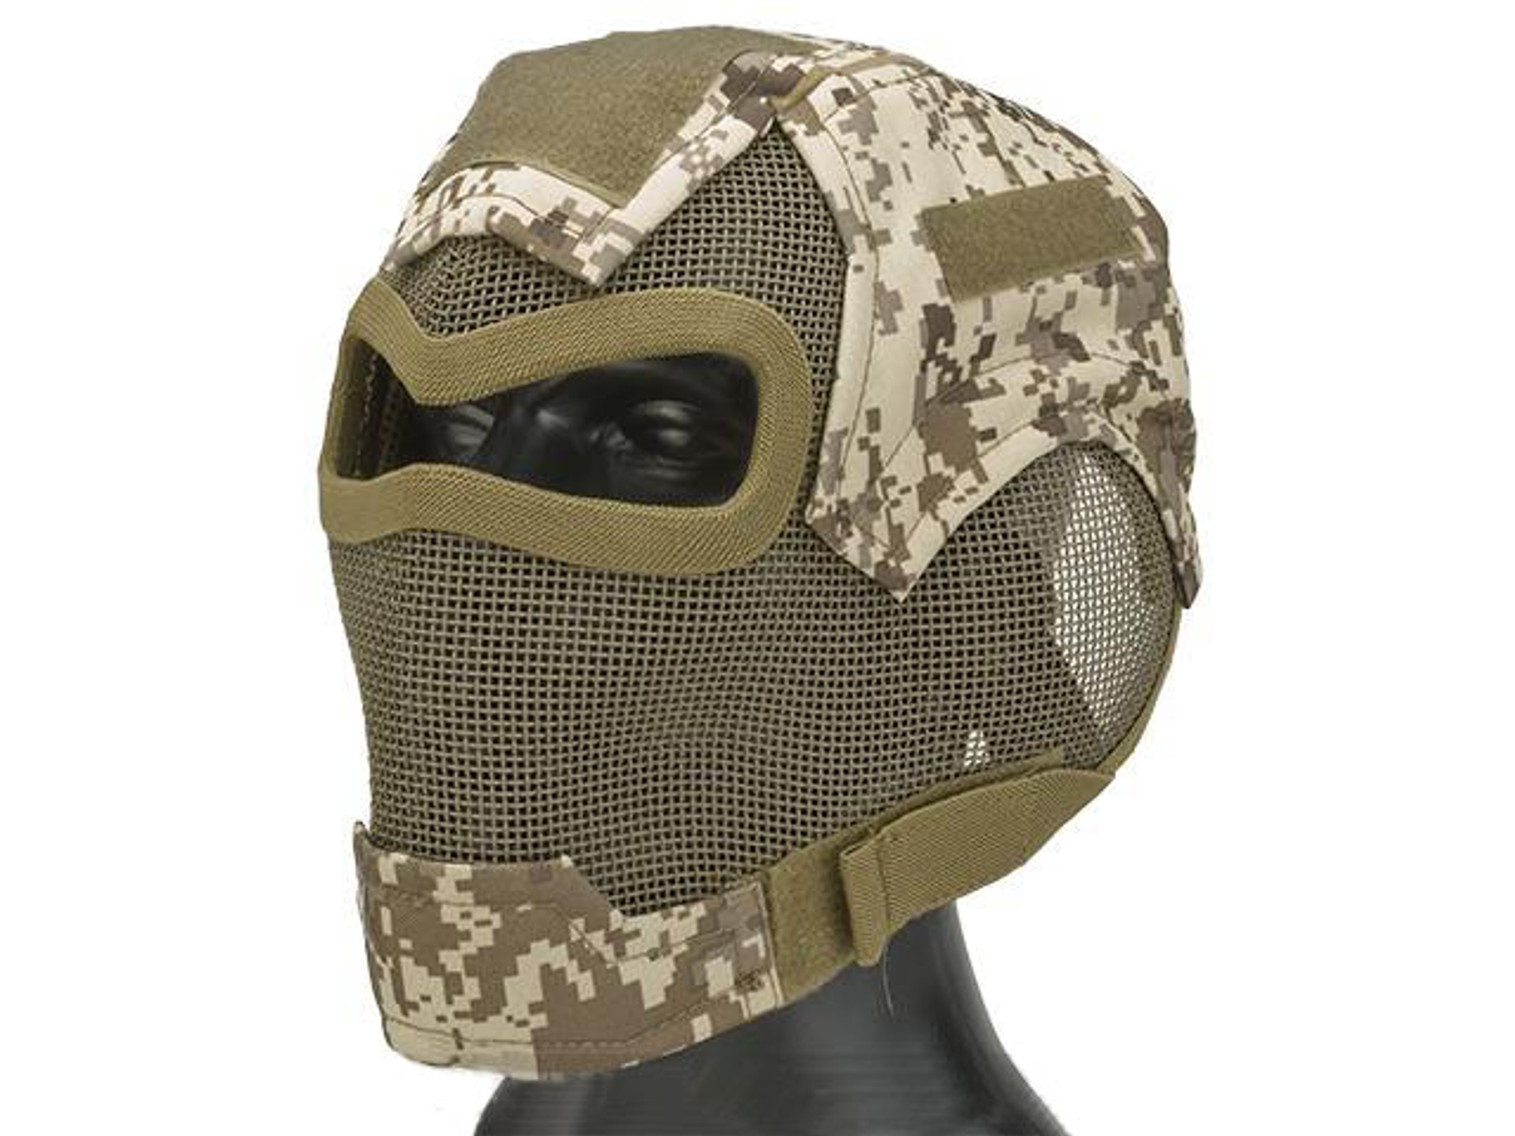 Matrix Iron Face Carbon Steel "Watcher" Gen7 Full Face Mask - Digital Desert